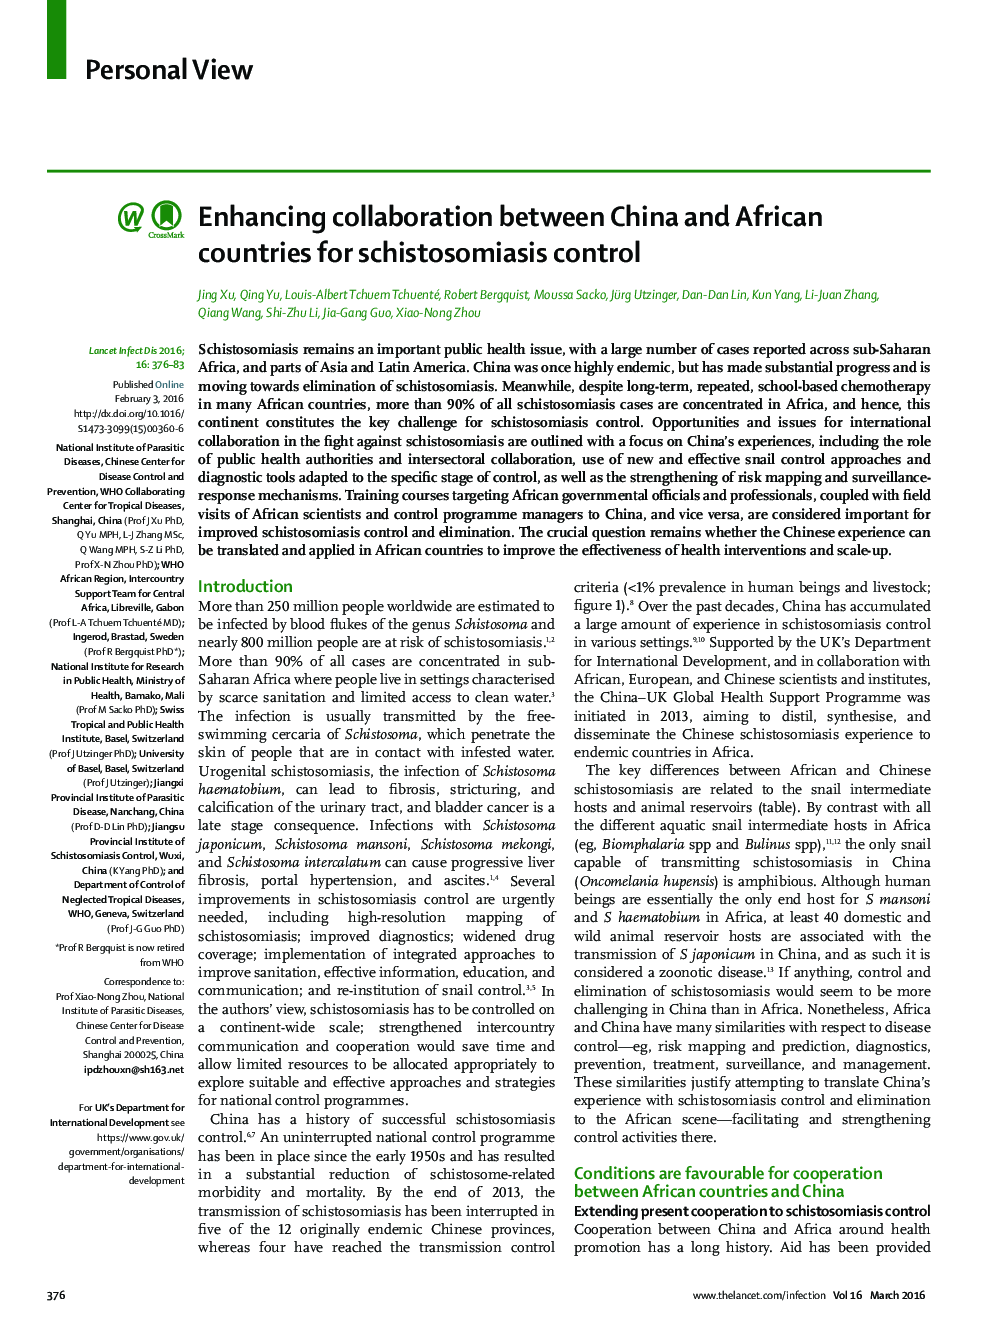 تقویت همکاری بین چین و کشورهای آفریقایی برای کنترل شیستوزومیازیس 